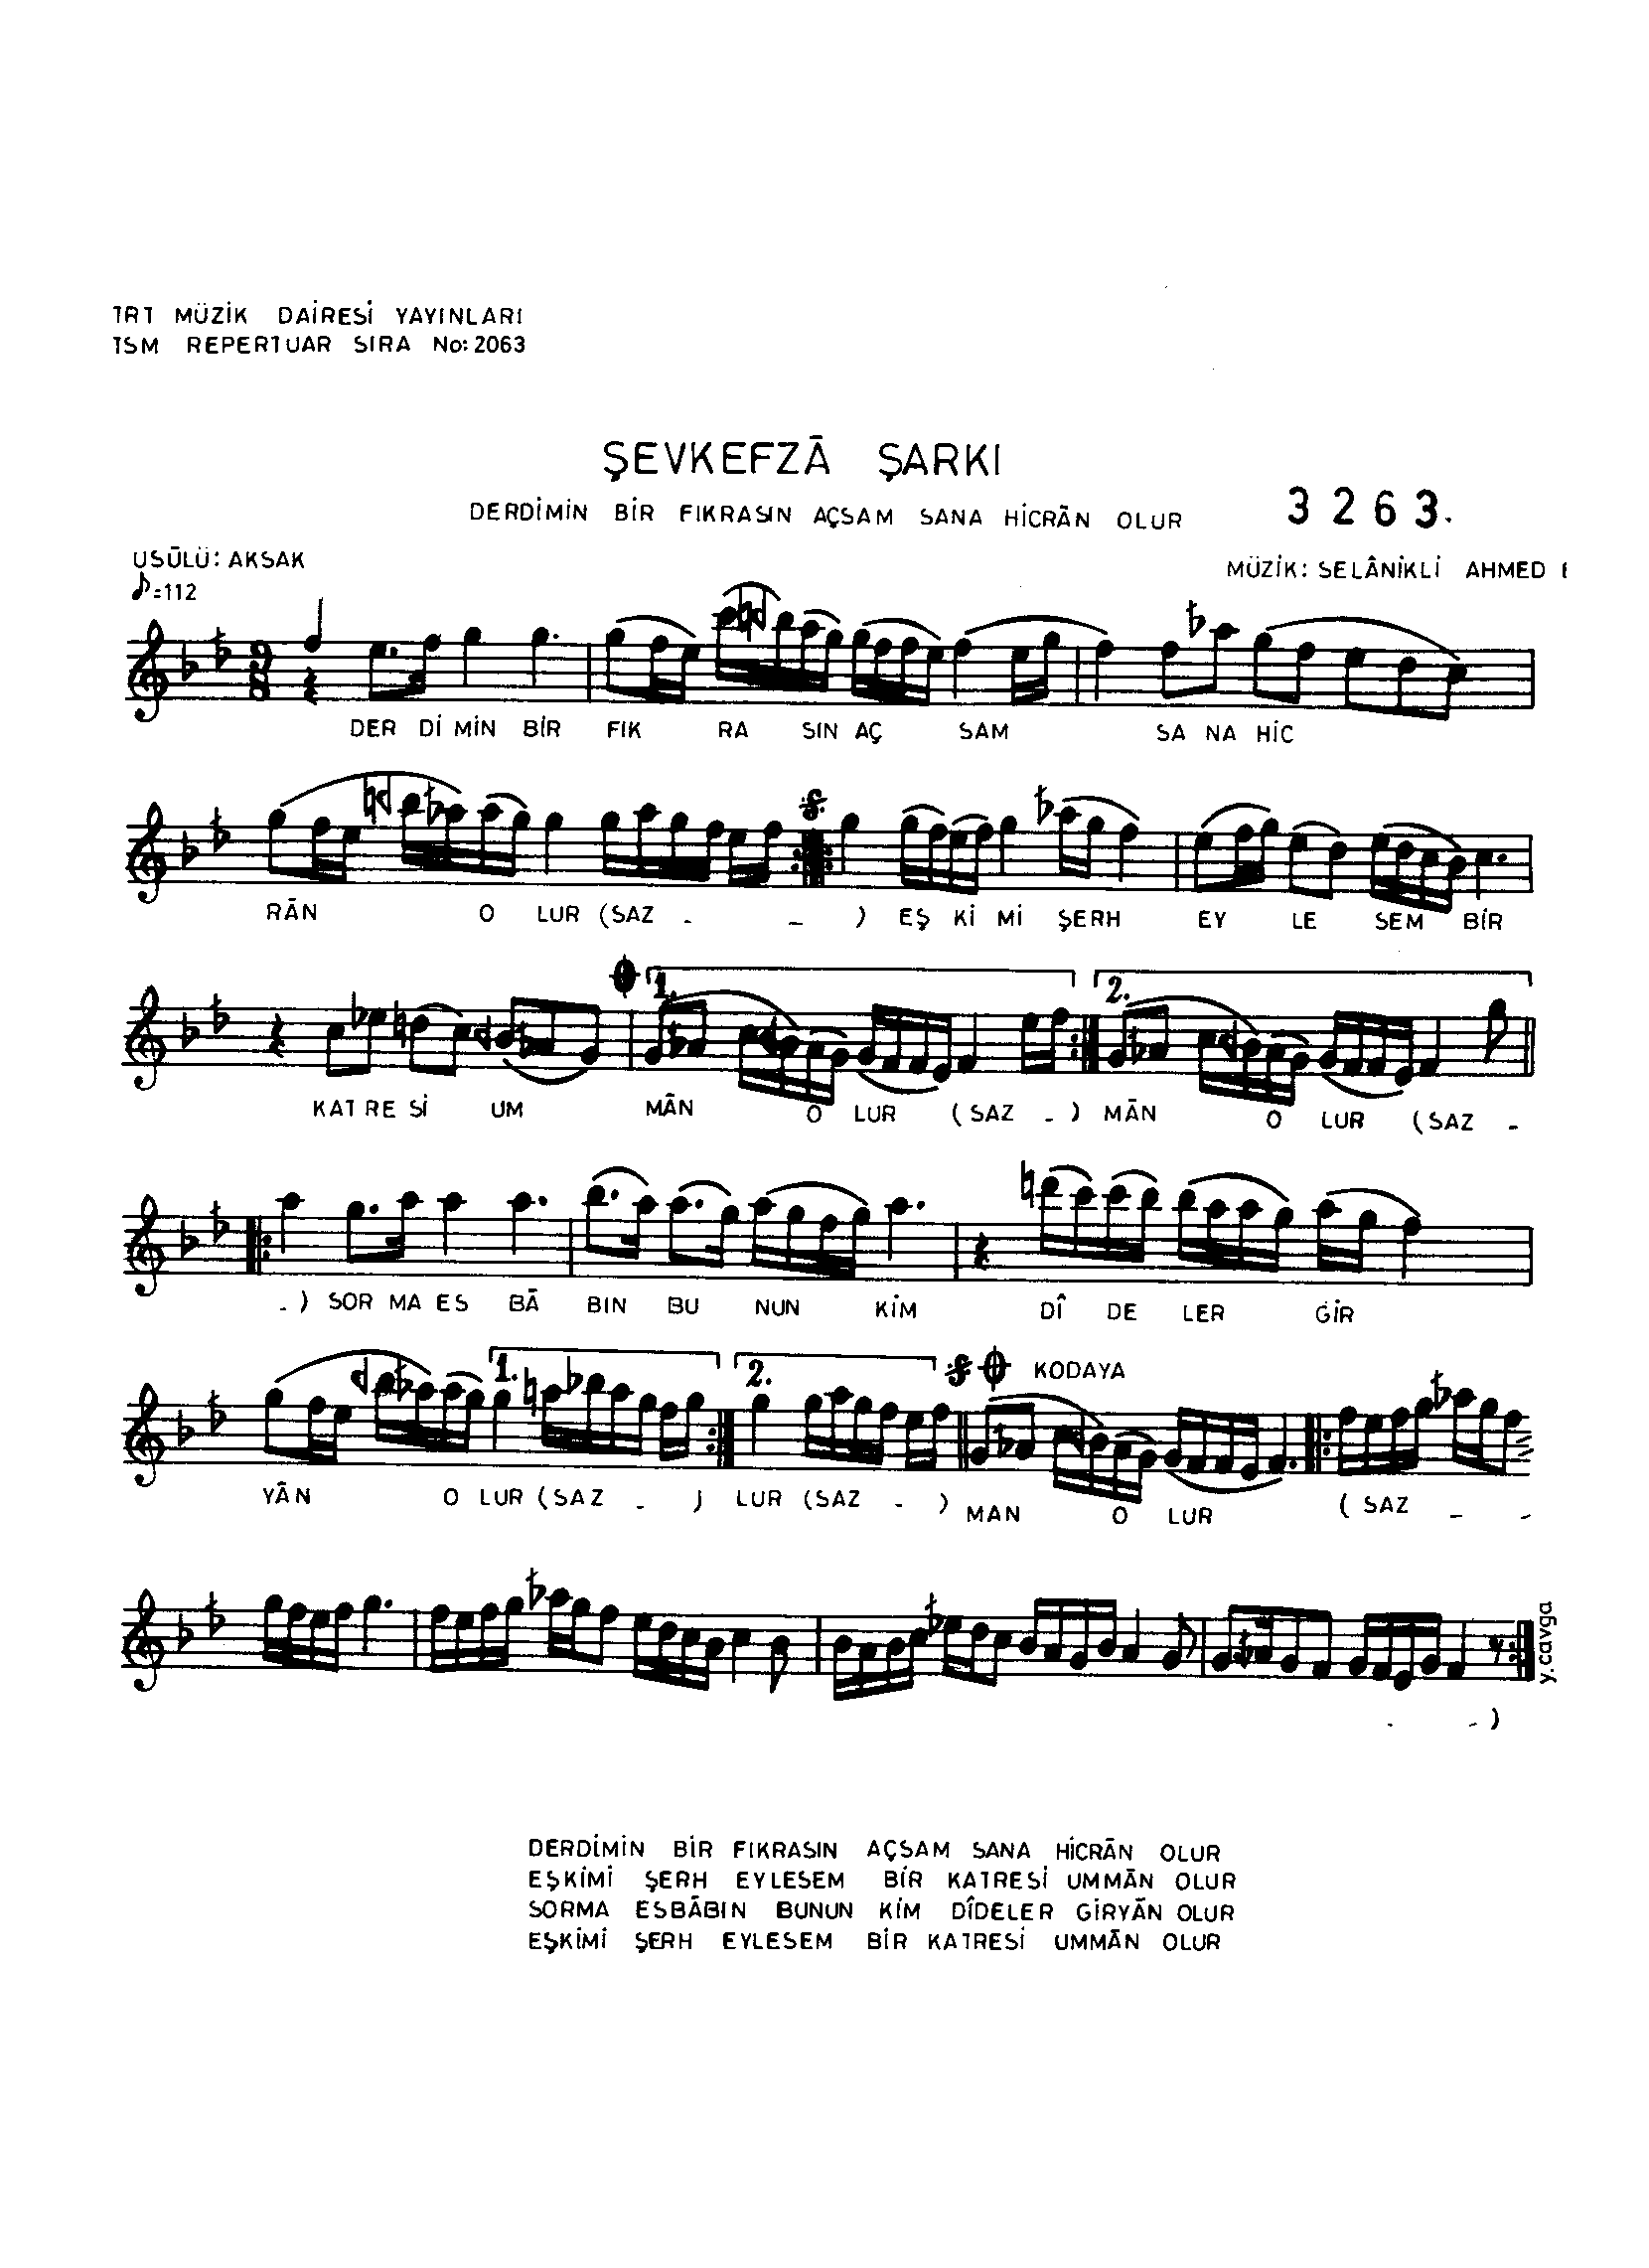 Şevk-Efzâ - Şarkı - Selânik'li Ahmet Efendi - Sayfa 1